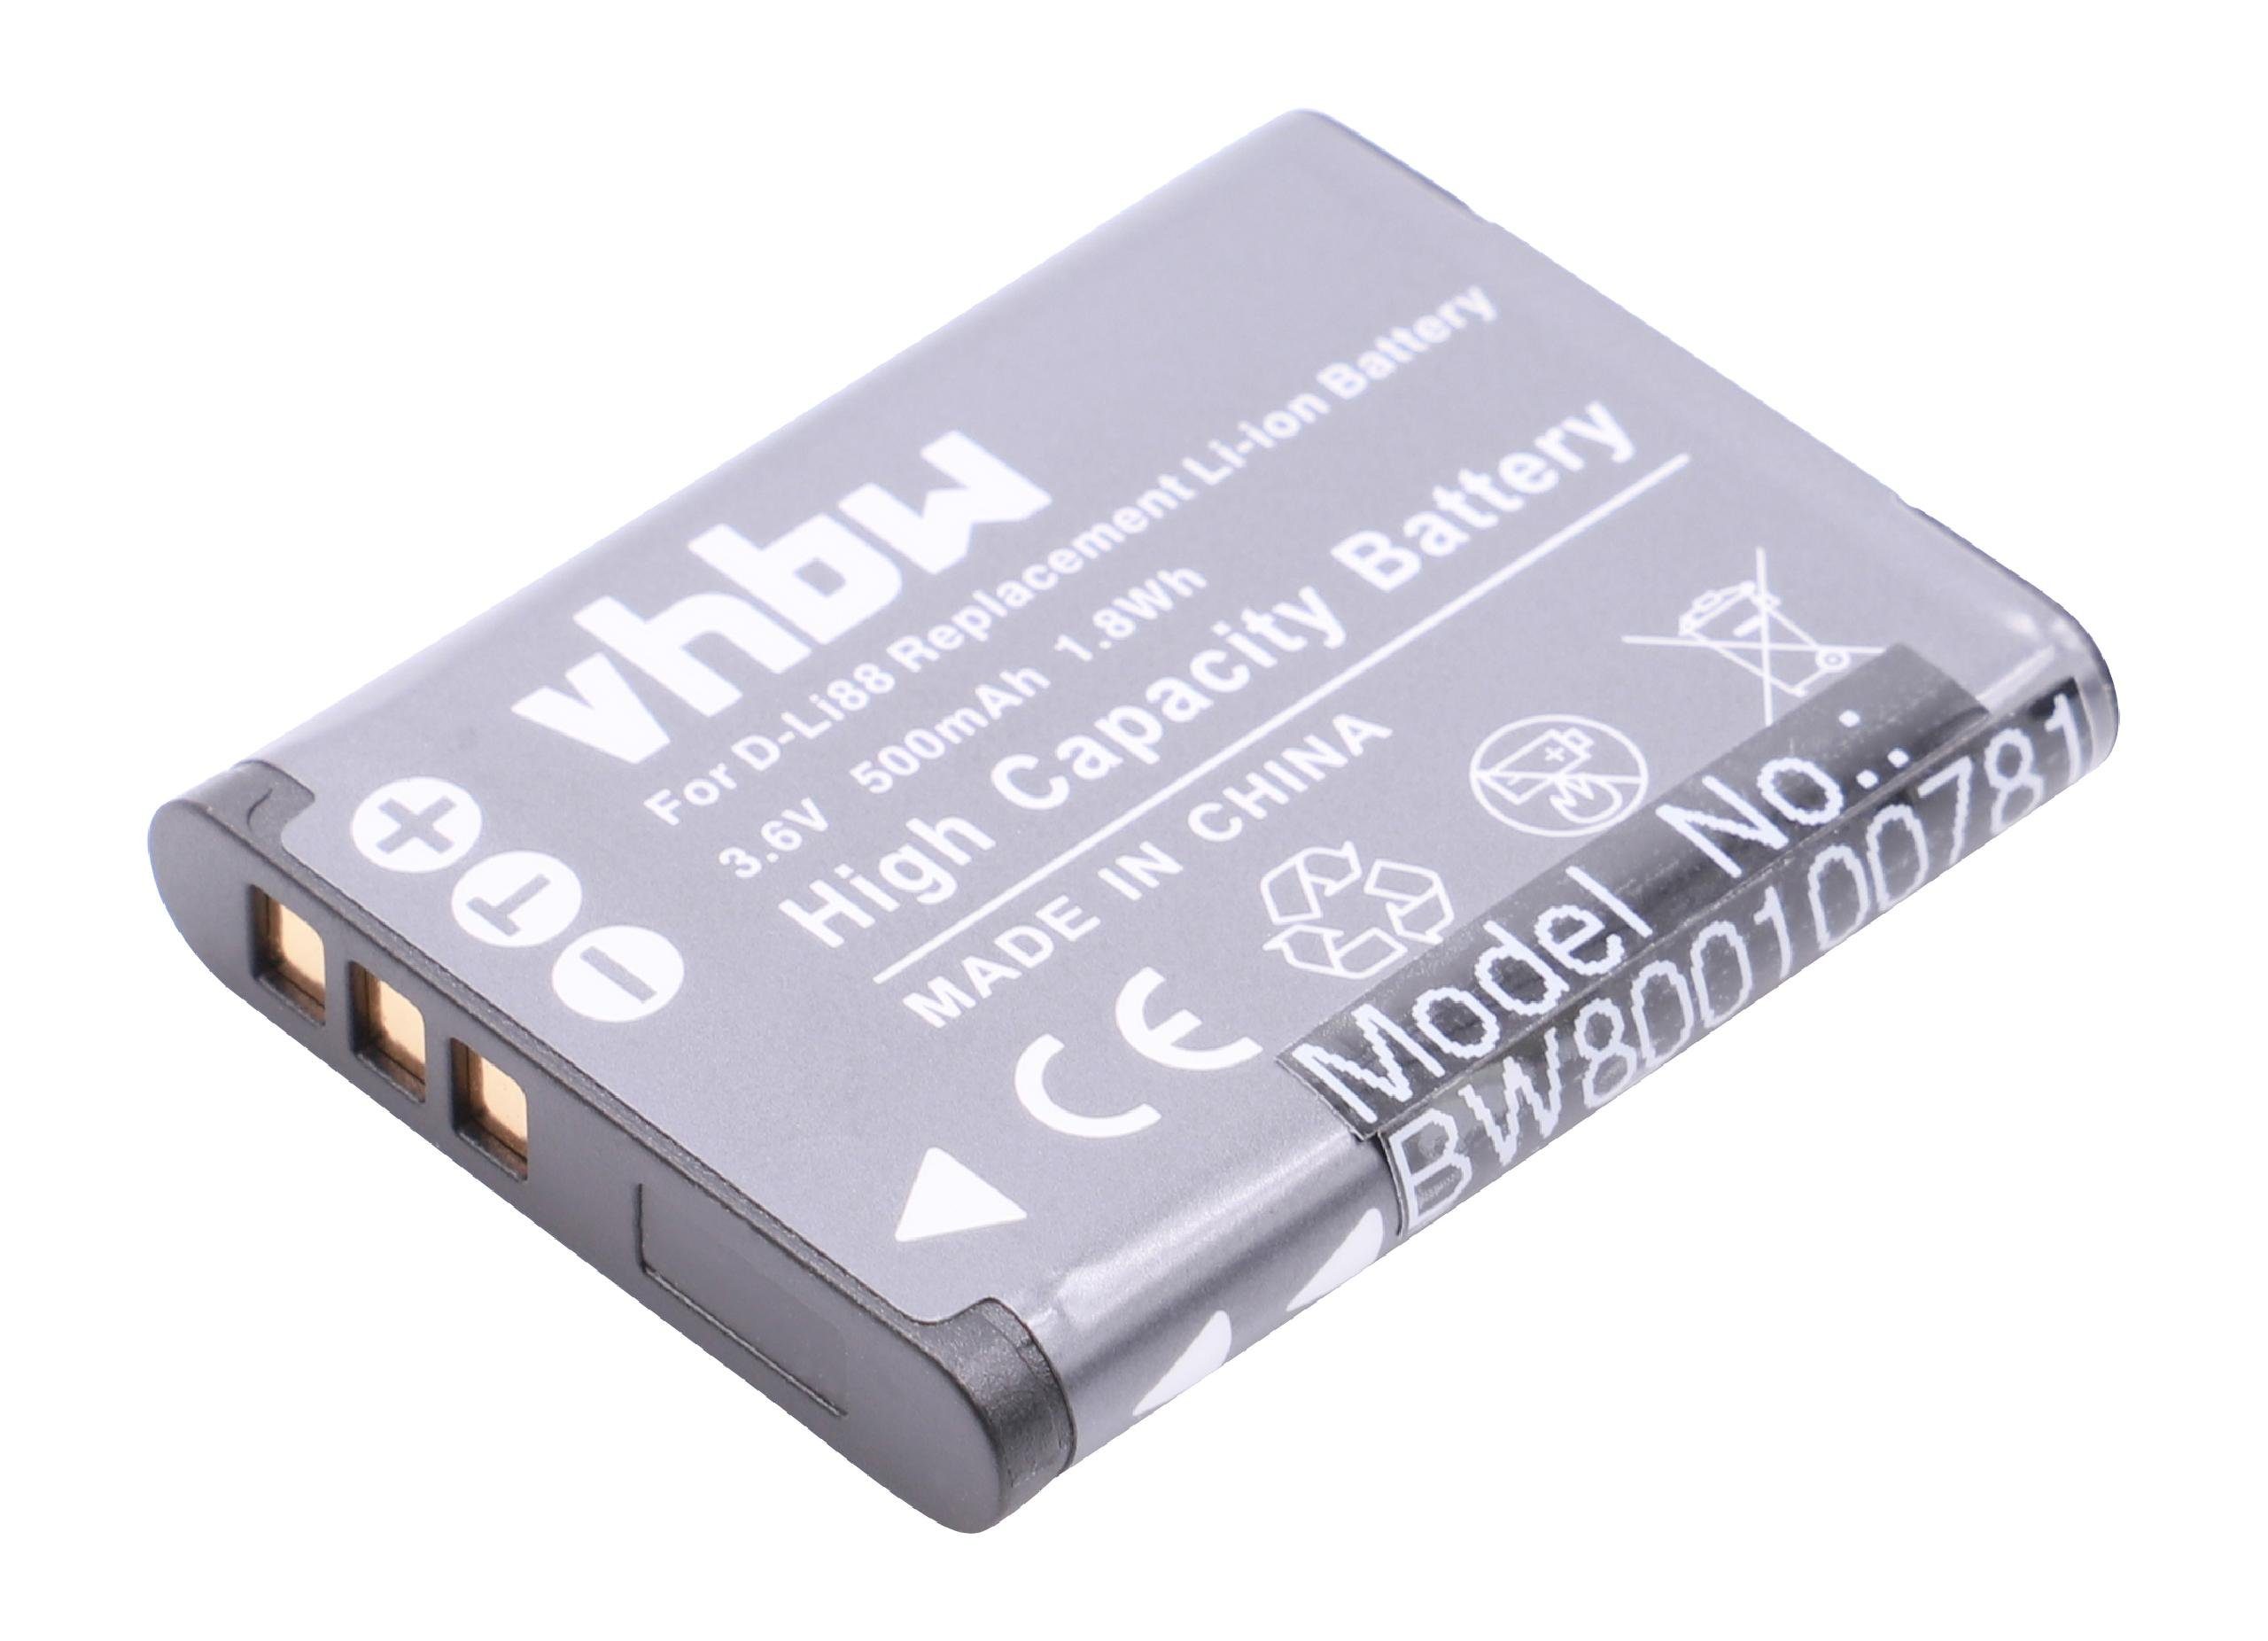 vhbw passend für Toshiba Camileo BW10, BW10 HD, SX500, SX-500, SX900, SX-900, PX1686, PX-1686 Kamera / Foto Kompakt (500mAh, 3,6V, Li-Ion) Kamera-Akku 500 mAh